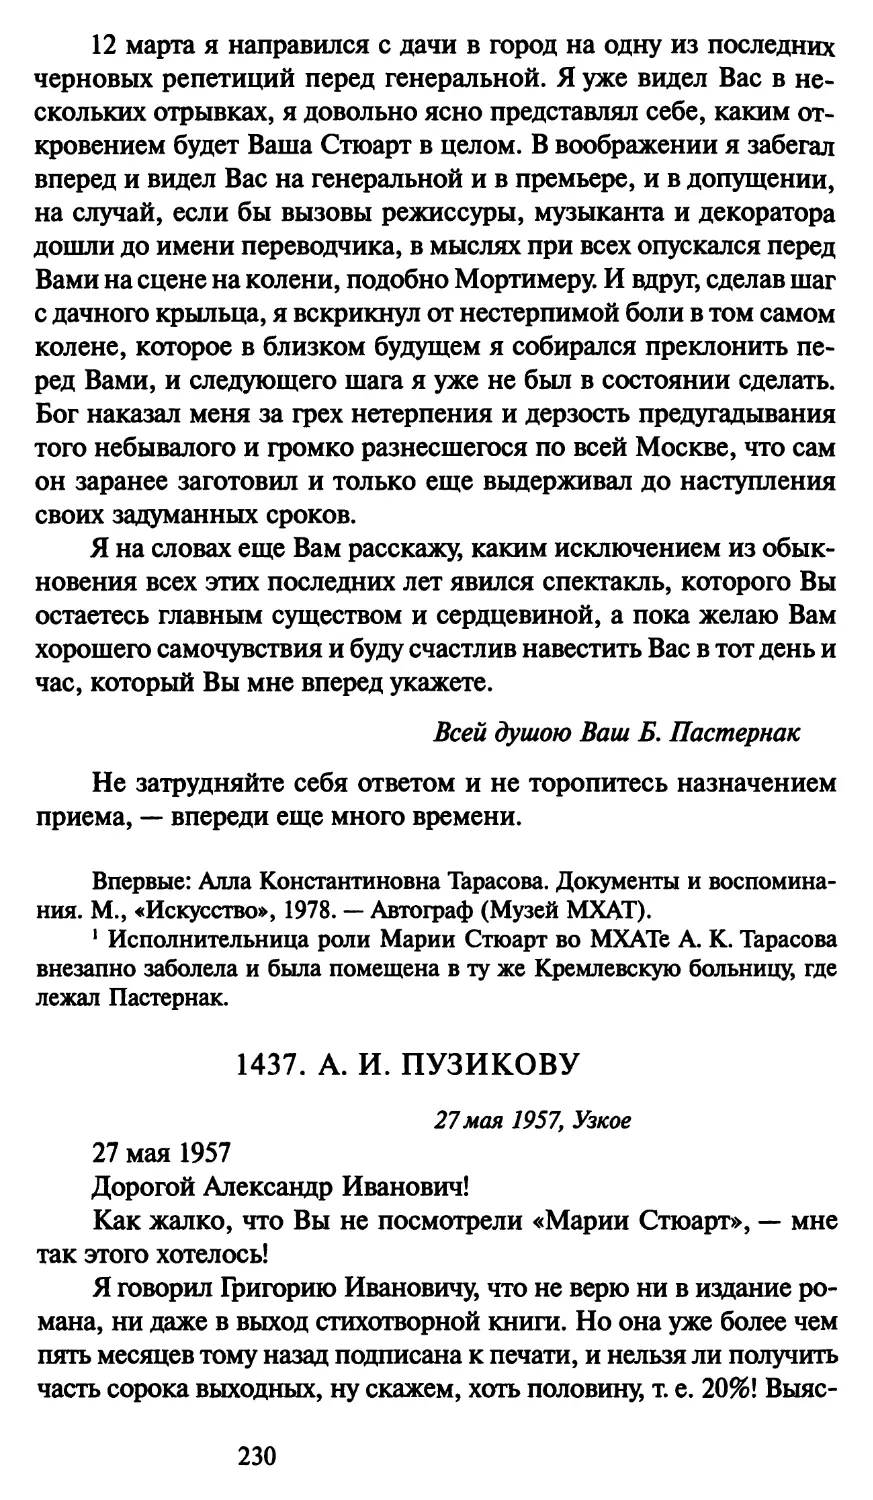 1437. А. И. Пузикову 27 мая 1957